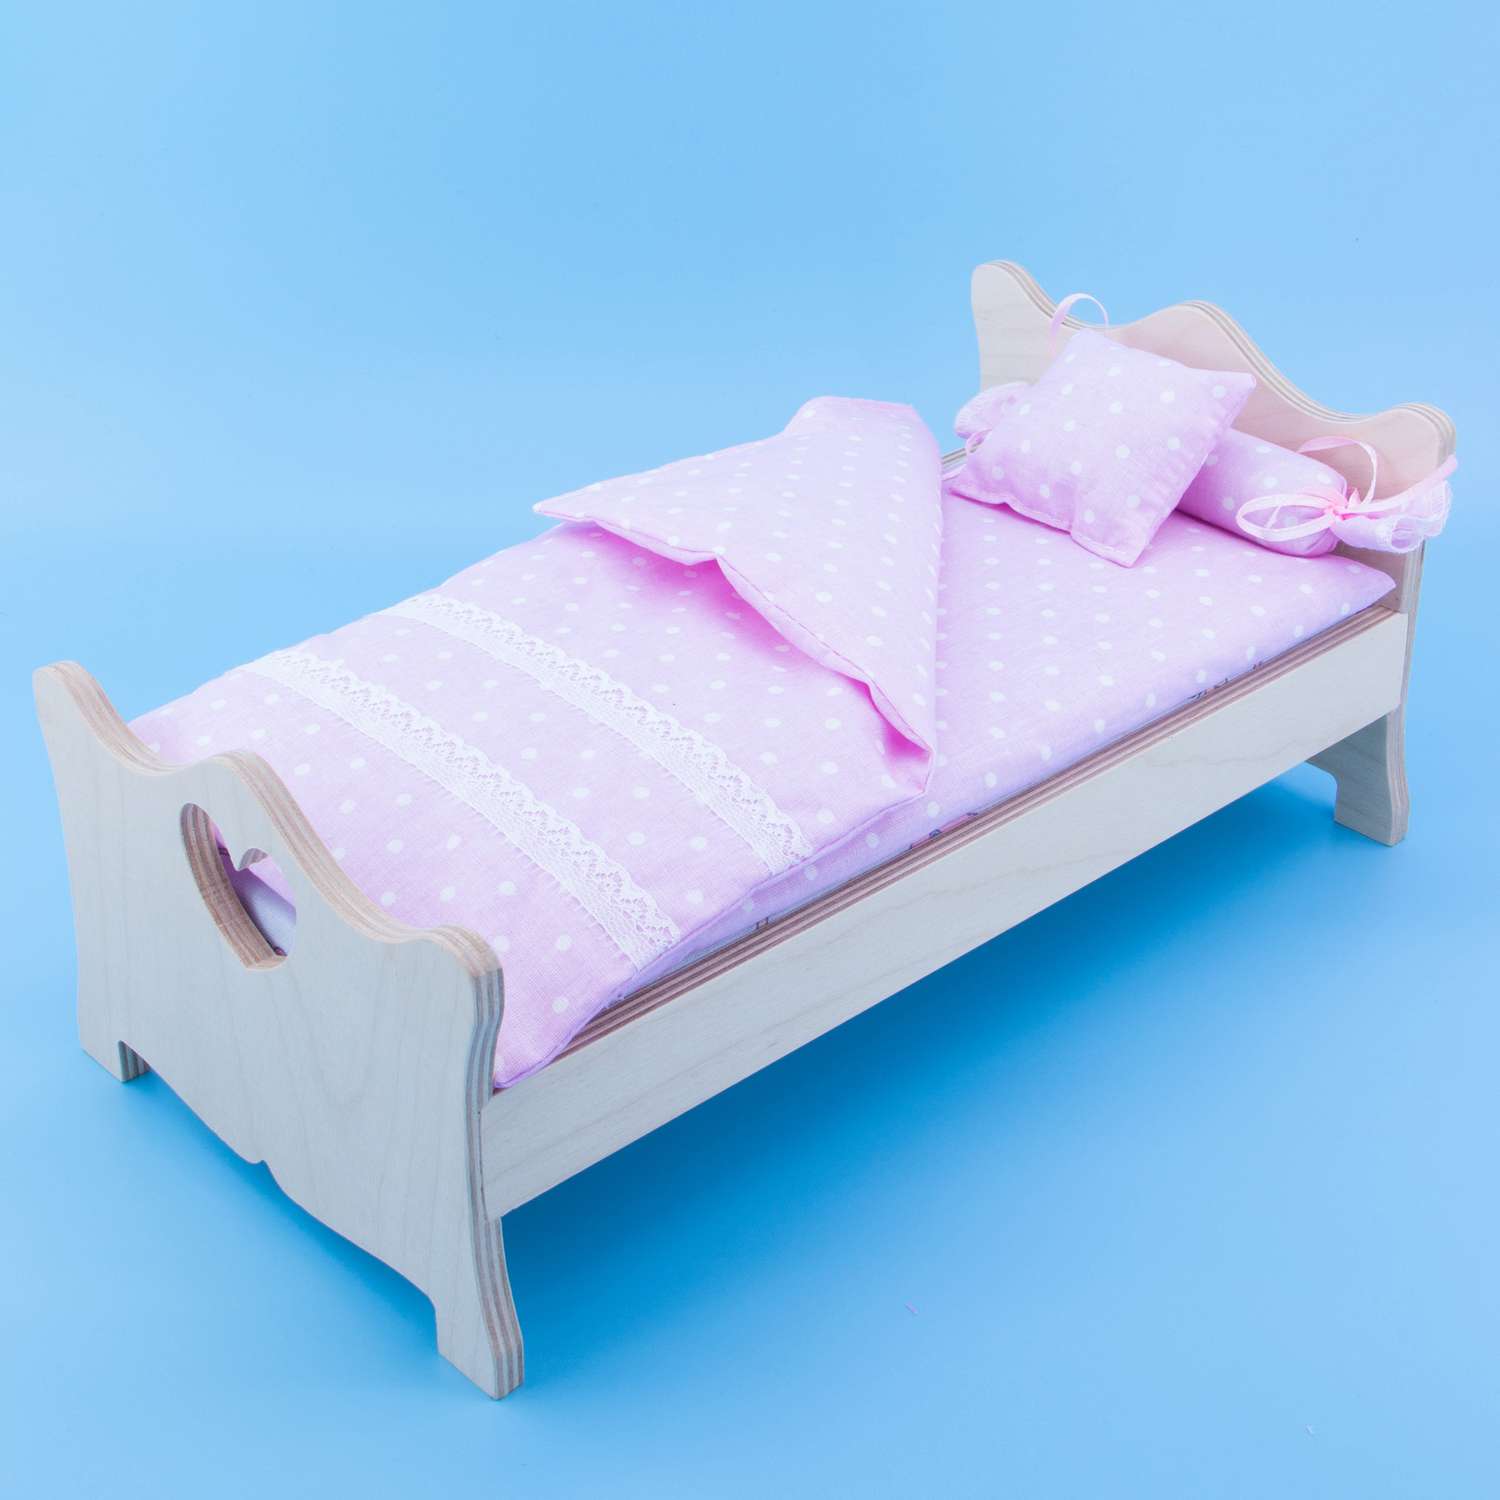 Комлпект постельного белья Модница для куклы 29 см пастельно-розовый 2002пастельно-розовый - фото 9